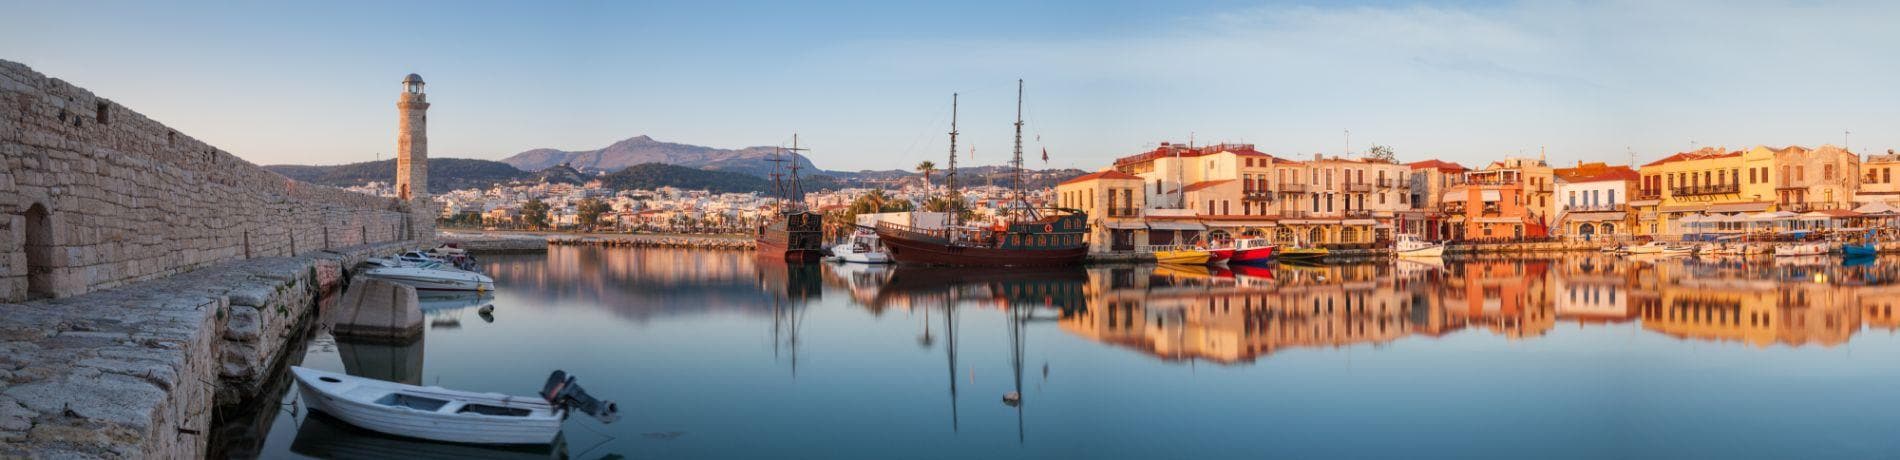 Vecchio porto di Rethymnon | Eden viaggi